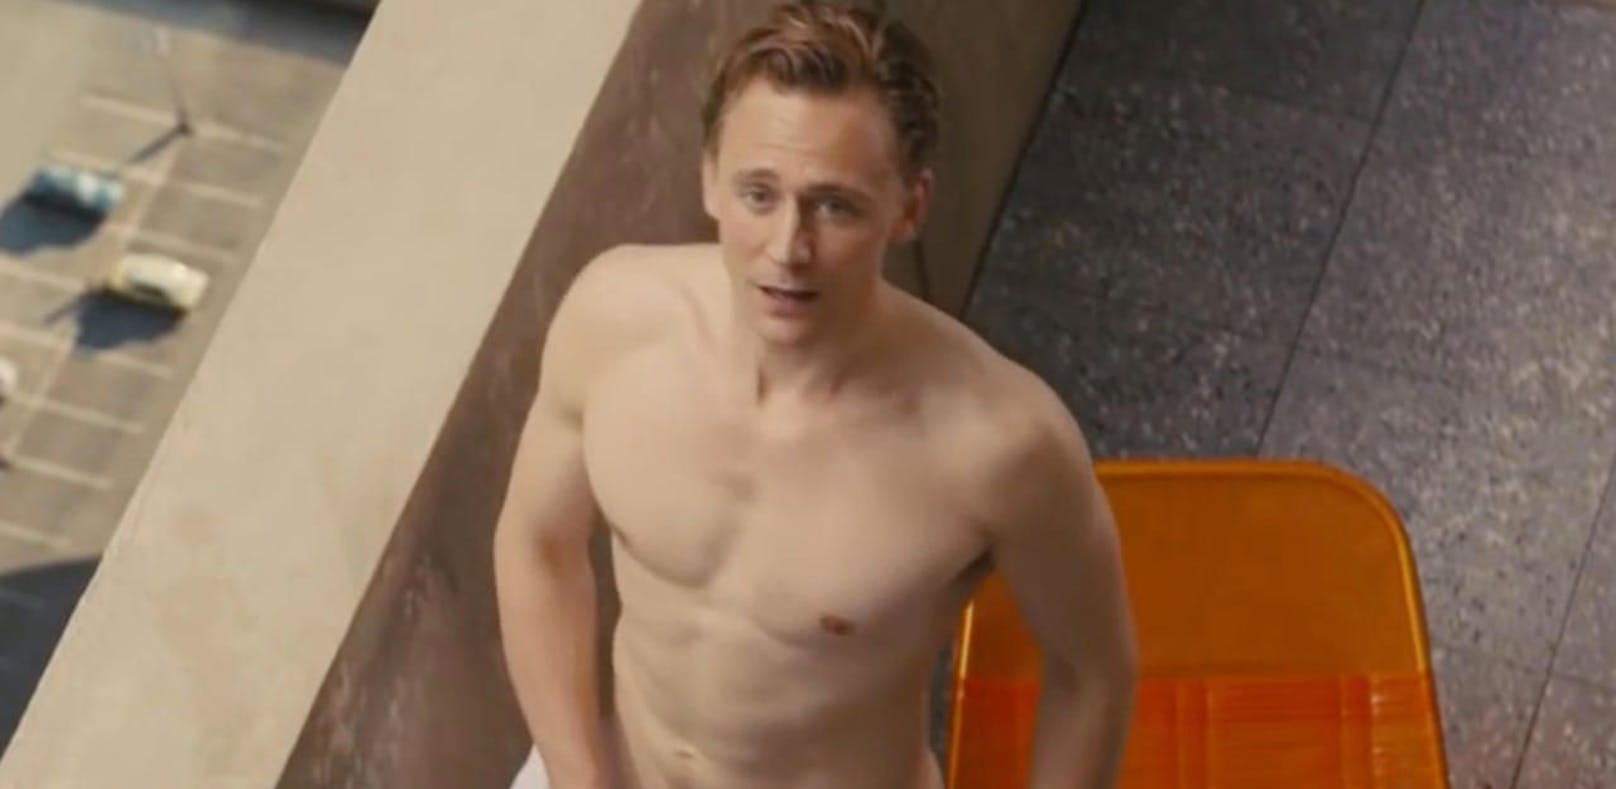 Darsteller Tom Hiddleston zeigt sich gerne nackt